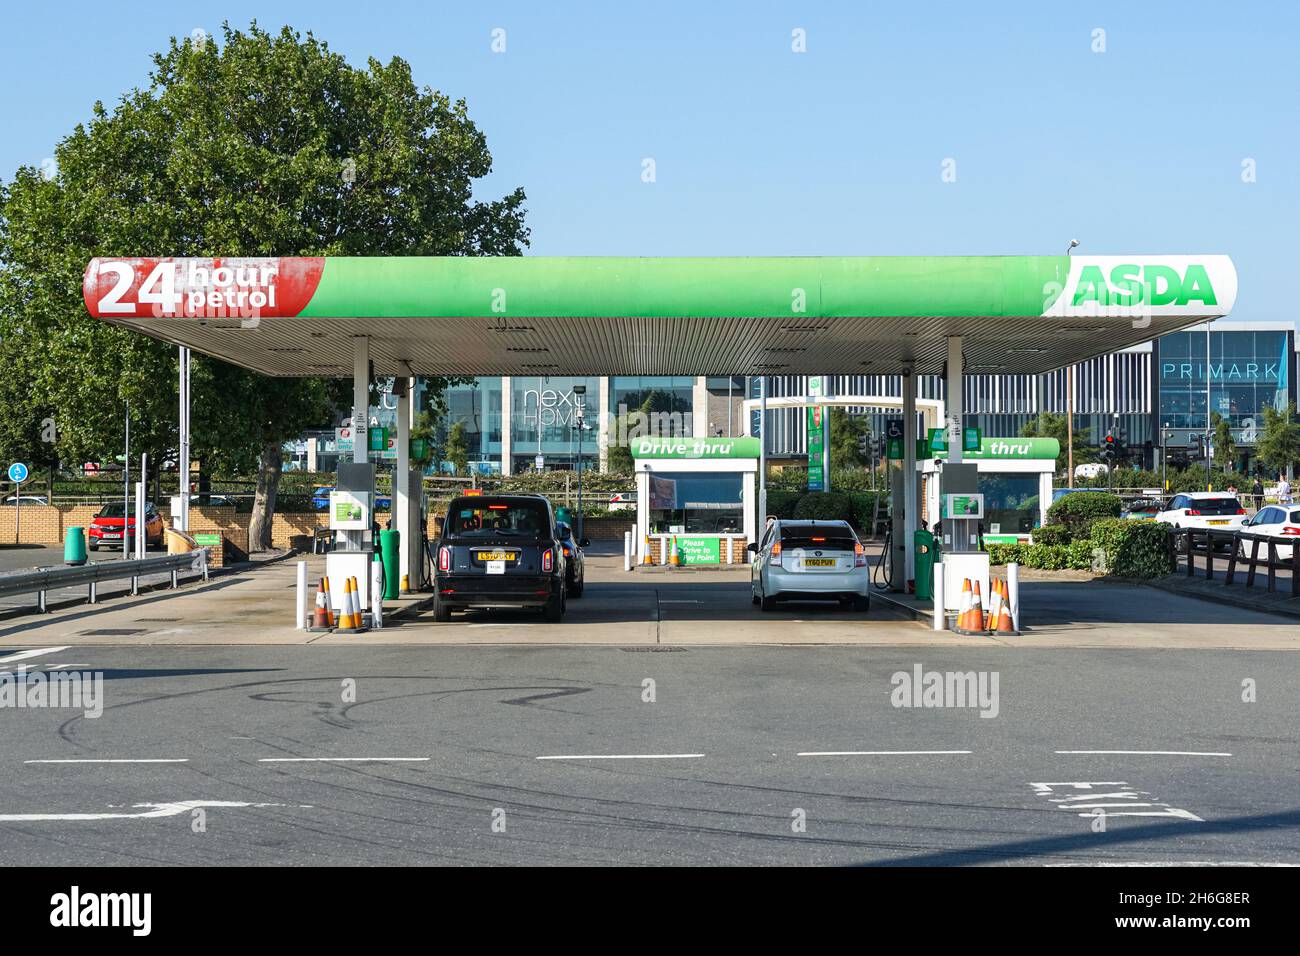 Asda petrol station forecourt in London, England, United Kingdom, UK Stock Photo